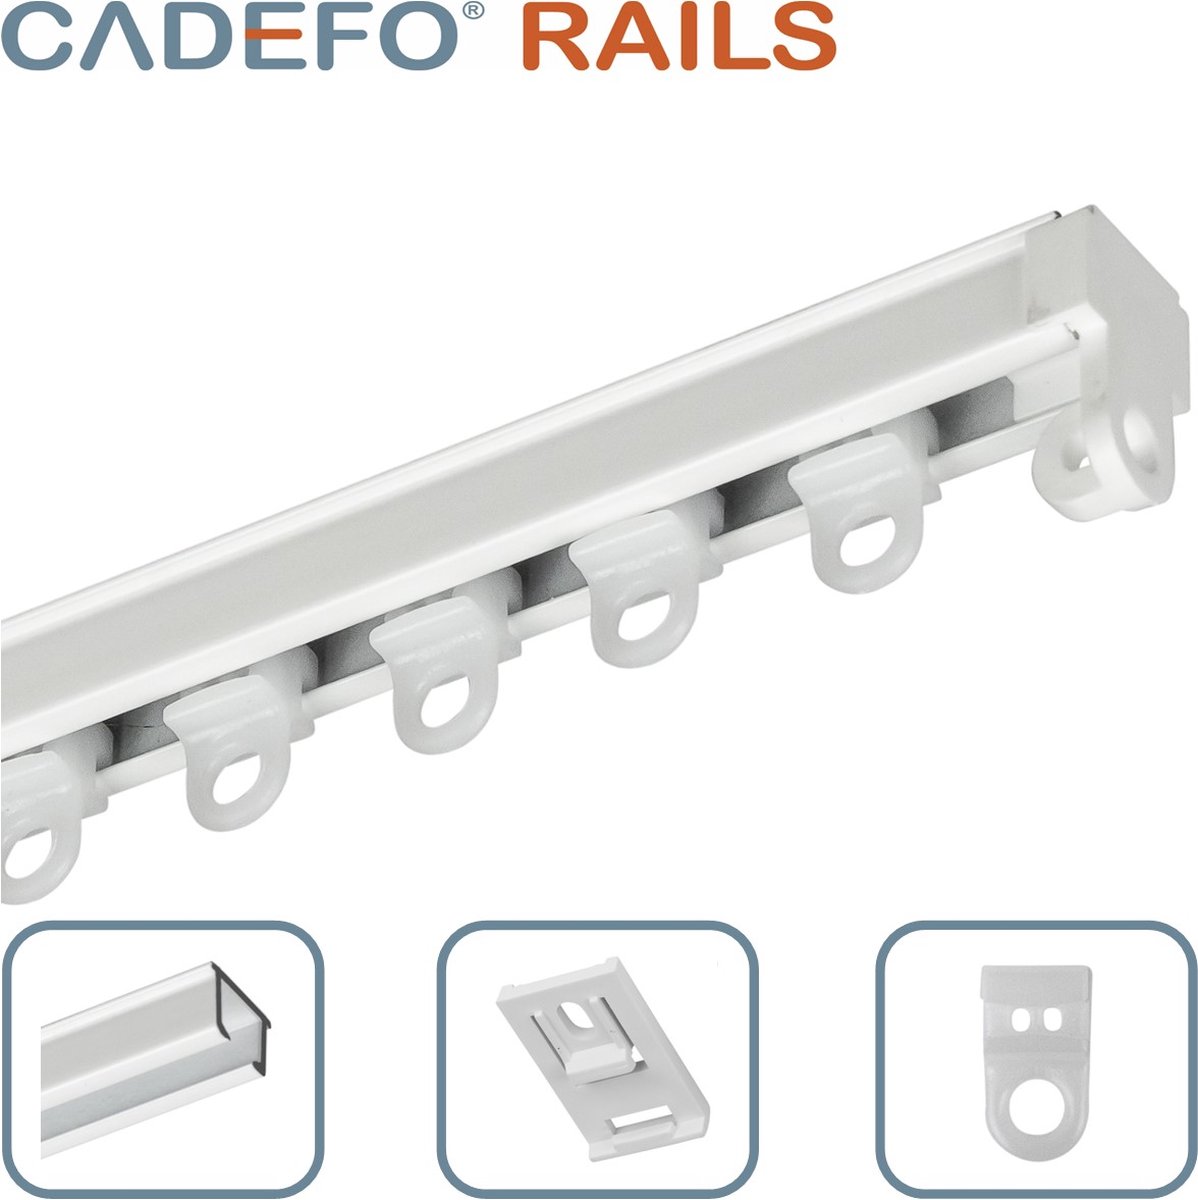 CADEFO RAILS (151 - 200 cm) Gordijnrails - Compleet op maat! - UIT 1 STUK - Leverbaar tot 6 meter - Plafondbevestiging - Lengte 173 cm